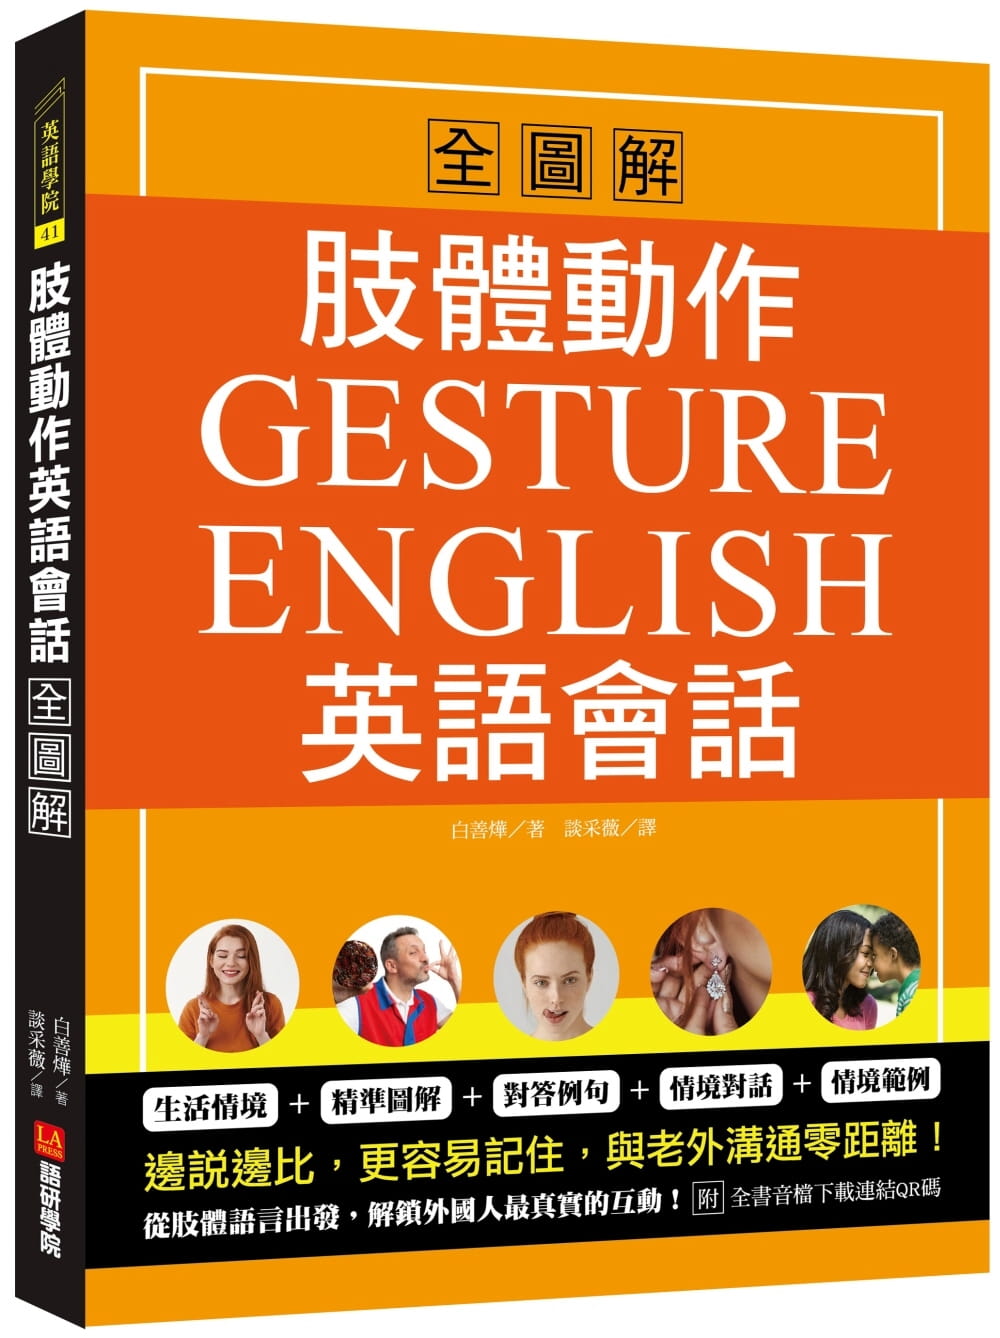 肢體動作英語會話全圖解：Gesture